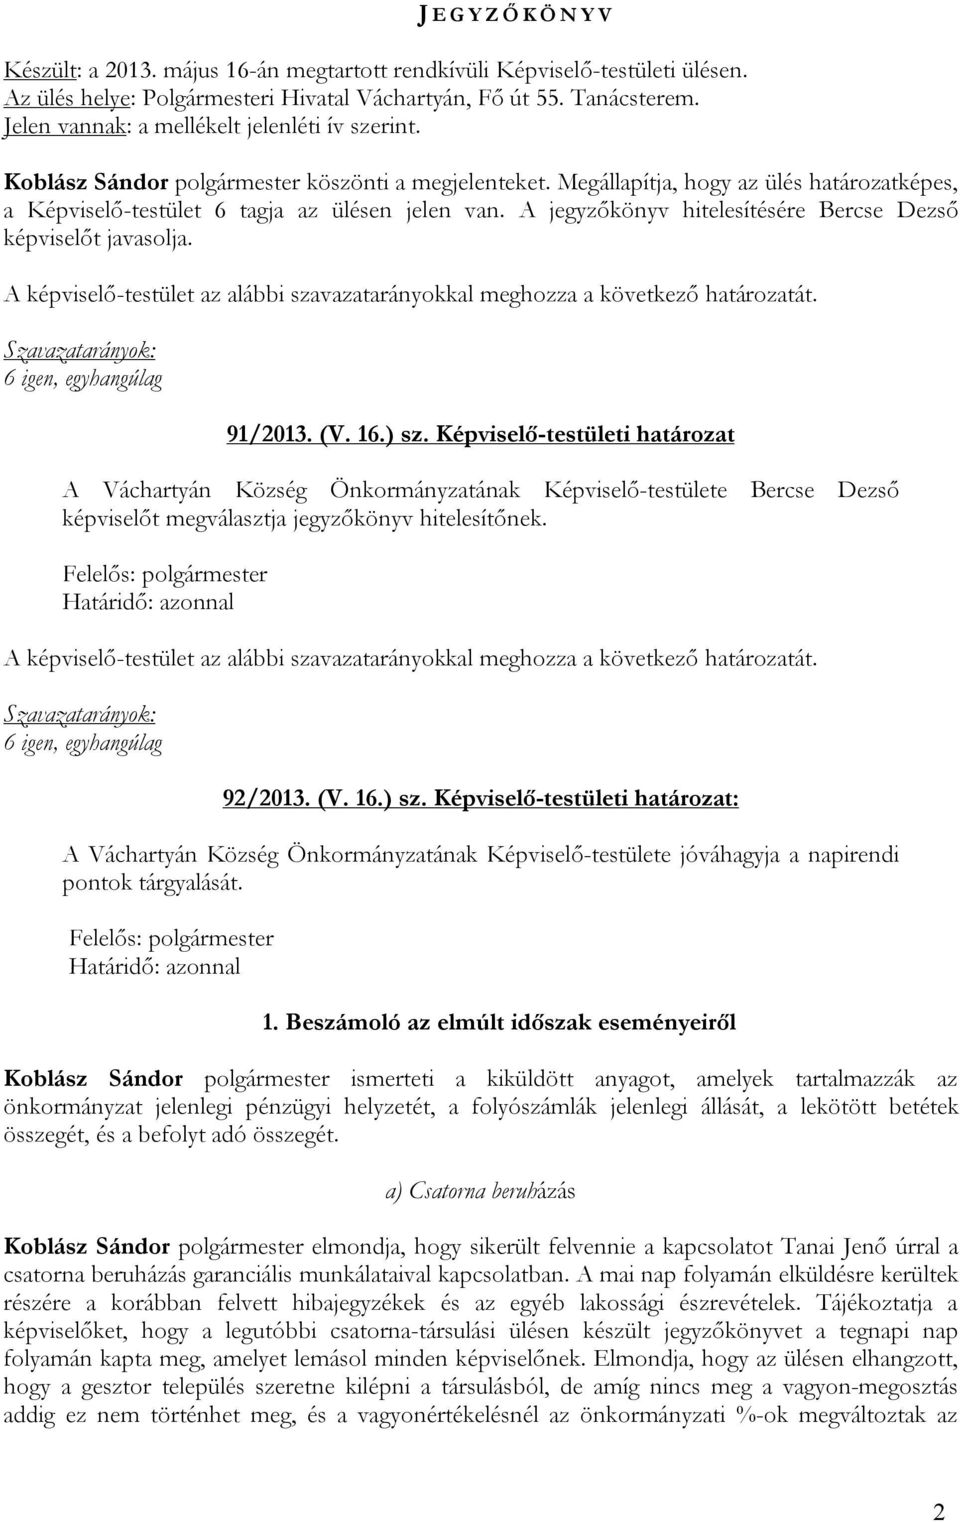 A jegyzőkönyv hitelesítésére Bercse Dezső képviselőt javasolja. 91/2013. (V. 16.) sz.